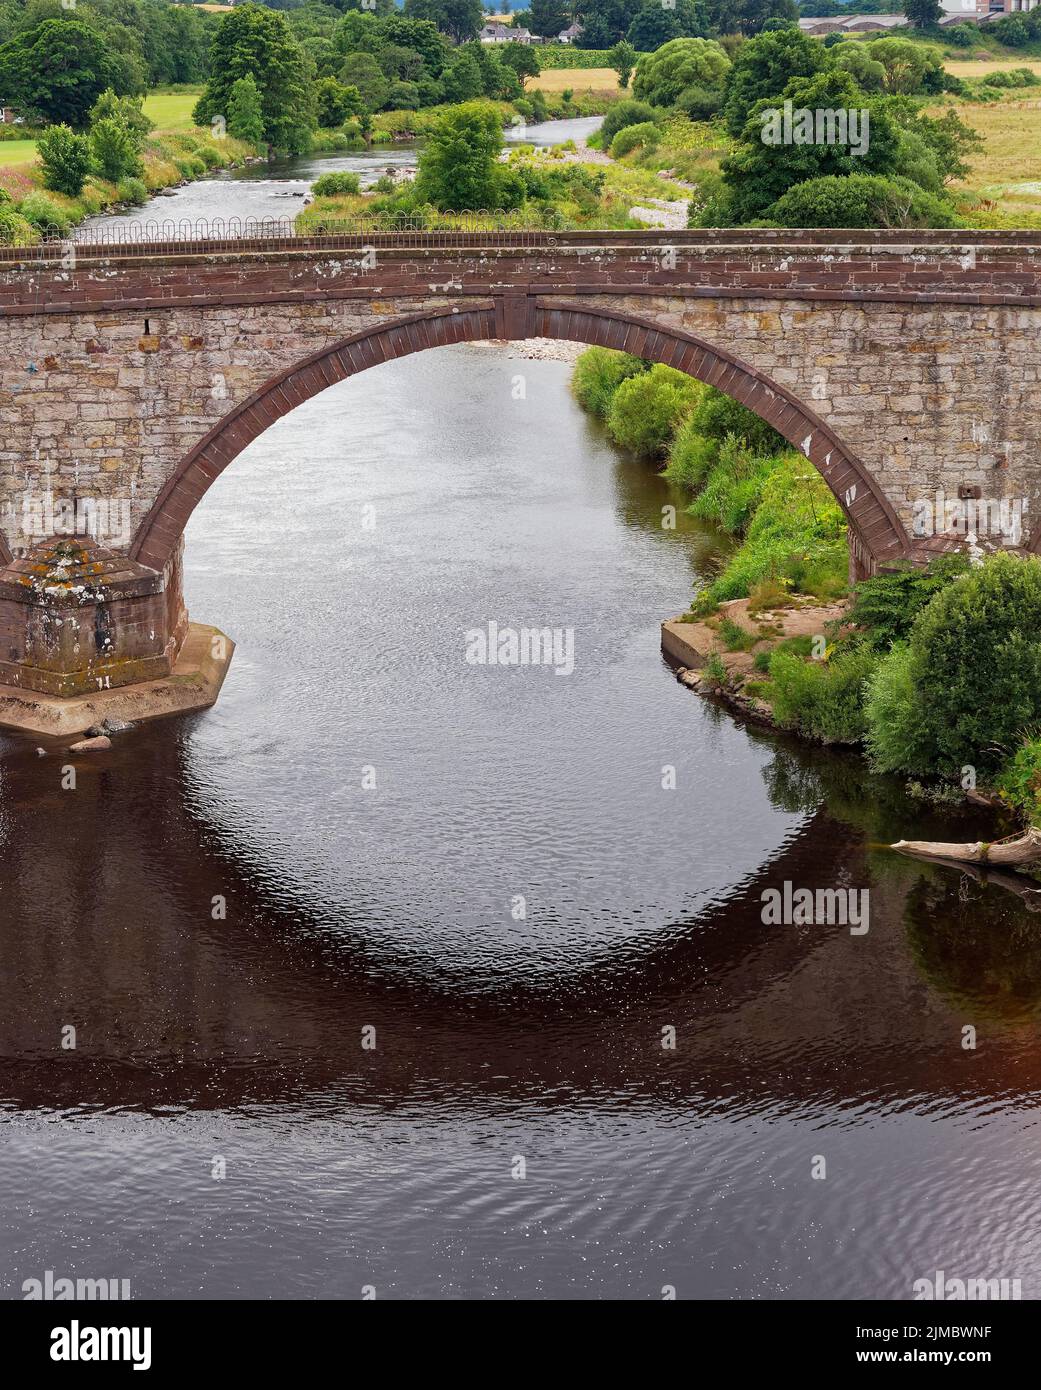 Un primer plano de uno de los arcos segmentarios del puente de agua Lower North que lleva la carretera A92 entre Arbroath y Aberdeen. Foto de stock